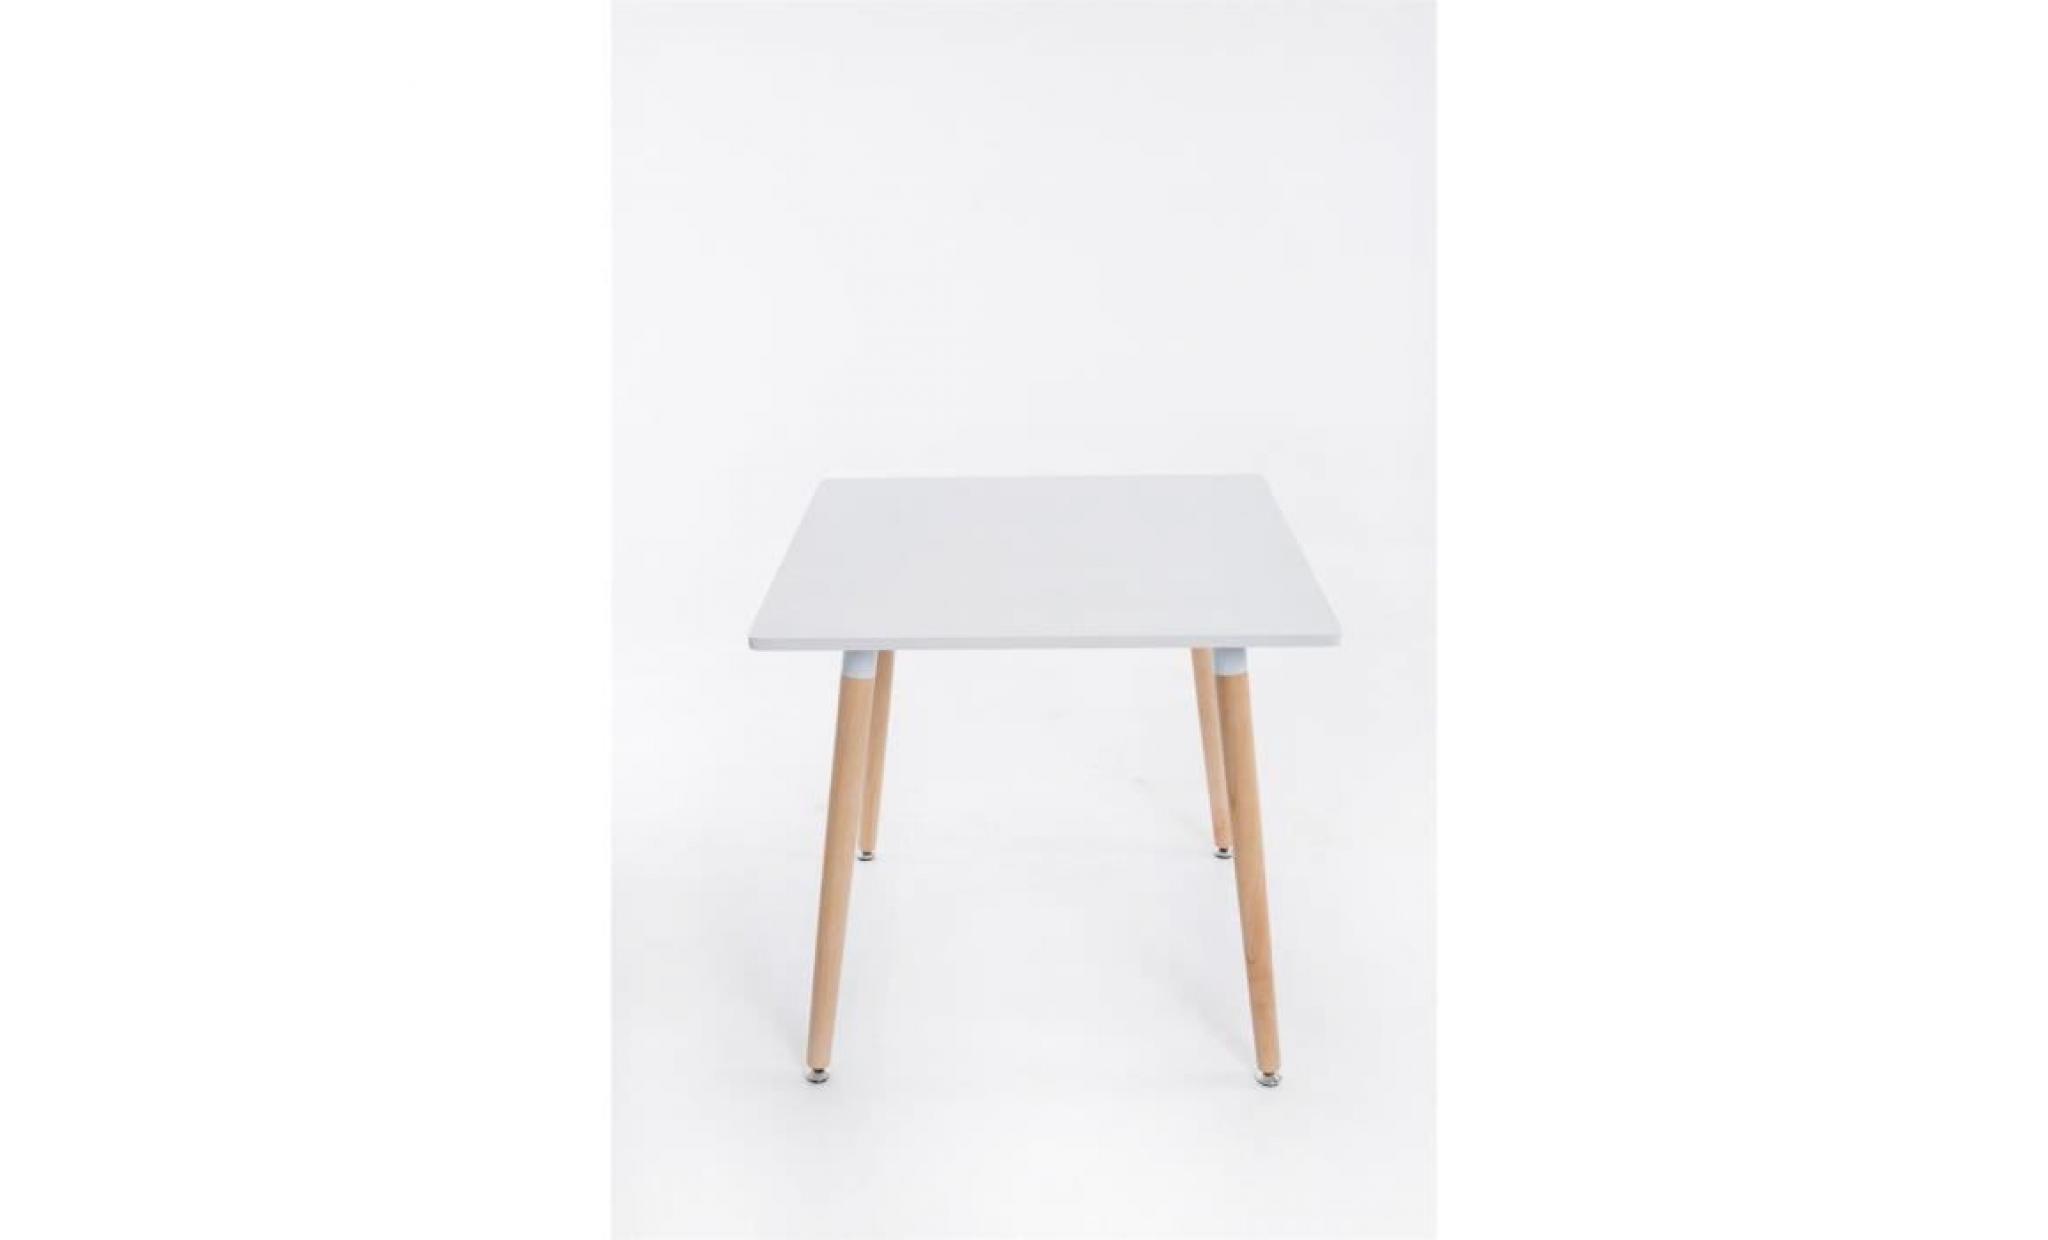 clp table à manger bente, carrée, 4 pieds en bois, 80 x 80 cm, design, avec protège sol pas cher